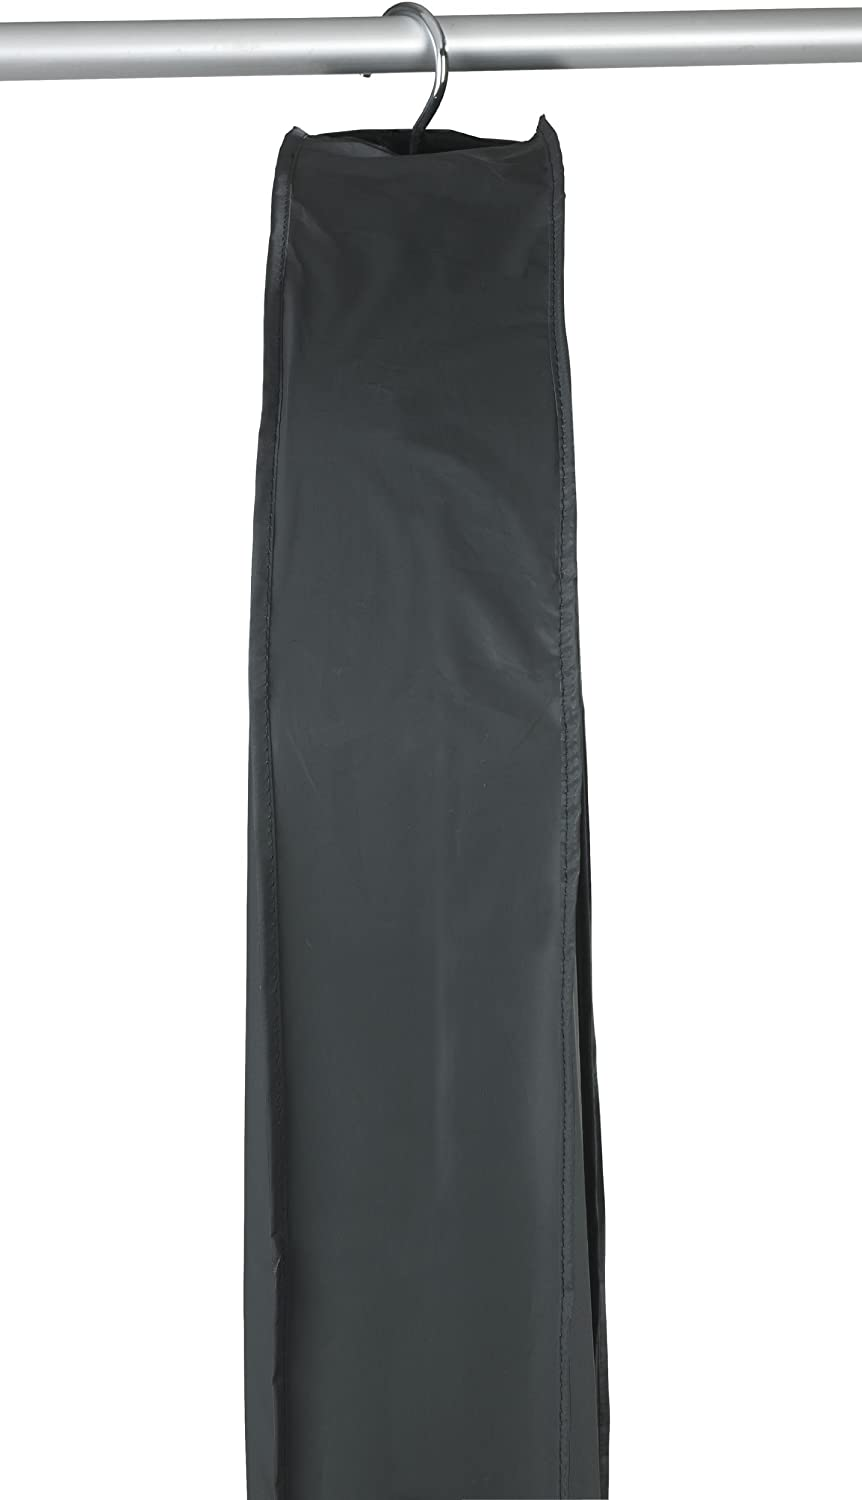 Kleidersack Deep Black Jumbo XXL - Kleiderhülle, Polyethylen-Vinylacetat, 60 x 135 x 12 cm, Schwarz